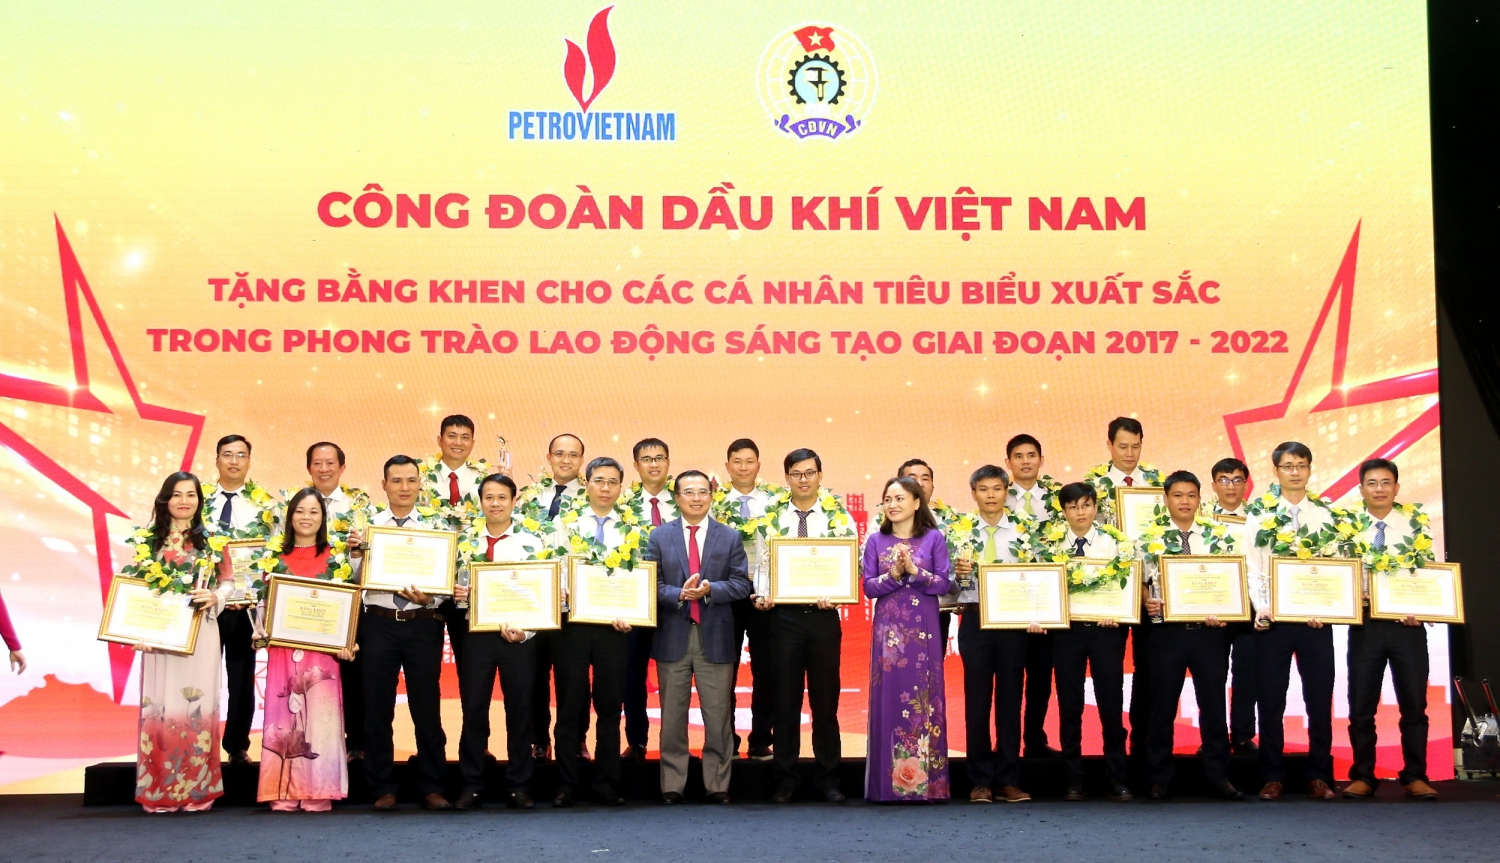 Công đoàn Dầu khí Việt Nam khen thưởng các cá nhân xuất sắc trong phong trào Lao động sáng tạo 2017 – 2022